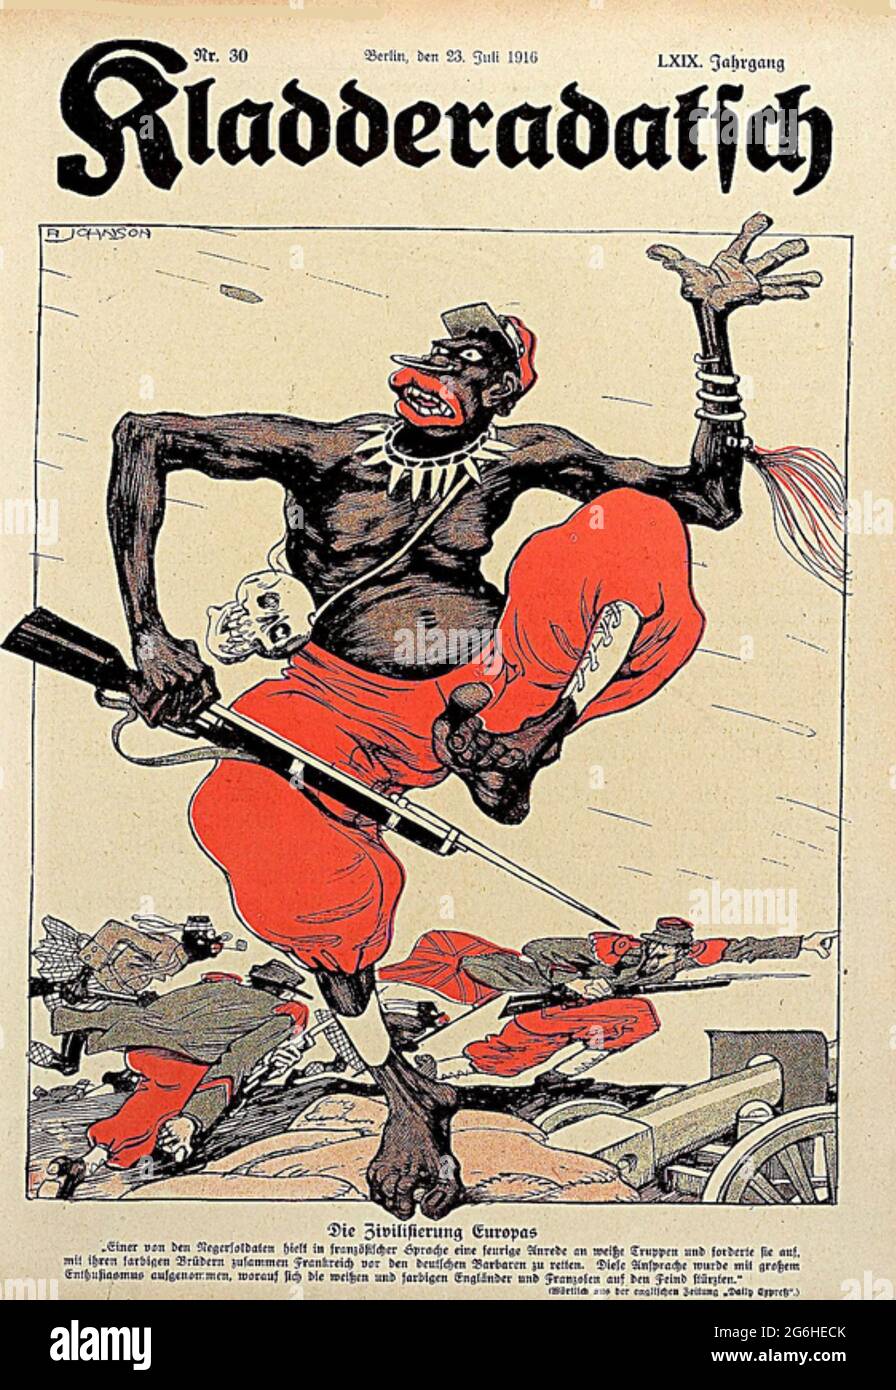 KLADDERADATSCH satirische deutsche Zeitschrift vom Juli 1914 verspottet französische Kolonialsoldaten Stockfoto